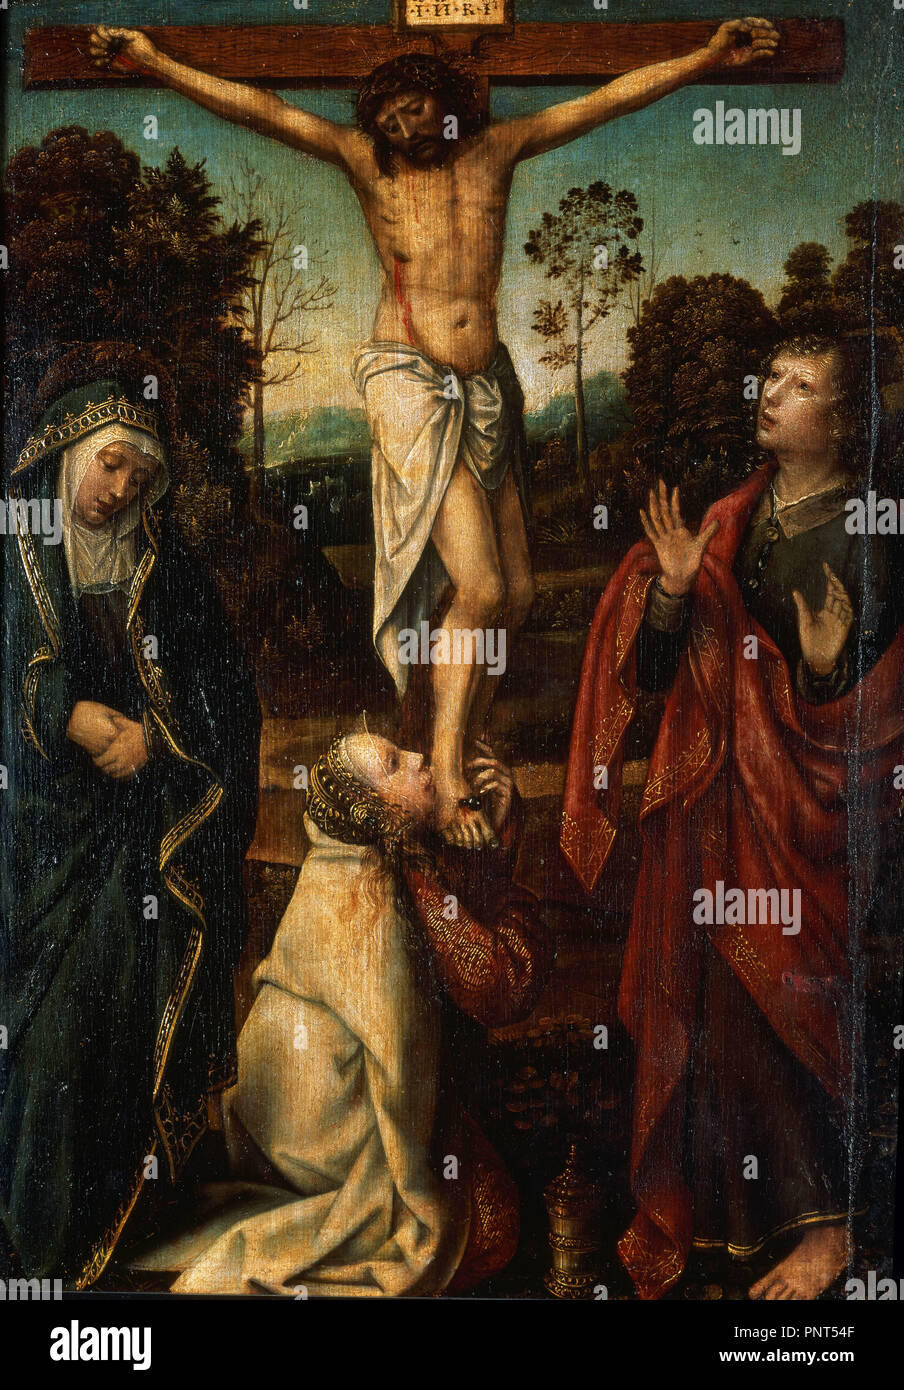 La Crucifixion. 16e siècle. 45x33 cm. Madrid, musée du Prado. L'Espagne. Auteur : David, GERARD. Emplacement : Museo del Prado-PINTURA. MADRID. L'ESPAGNE. Banque D'Images